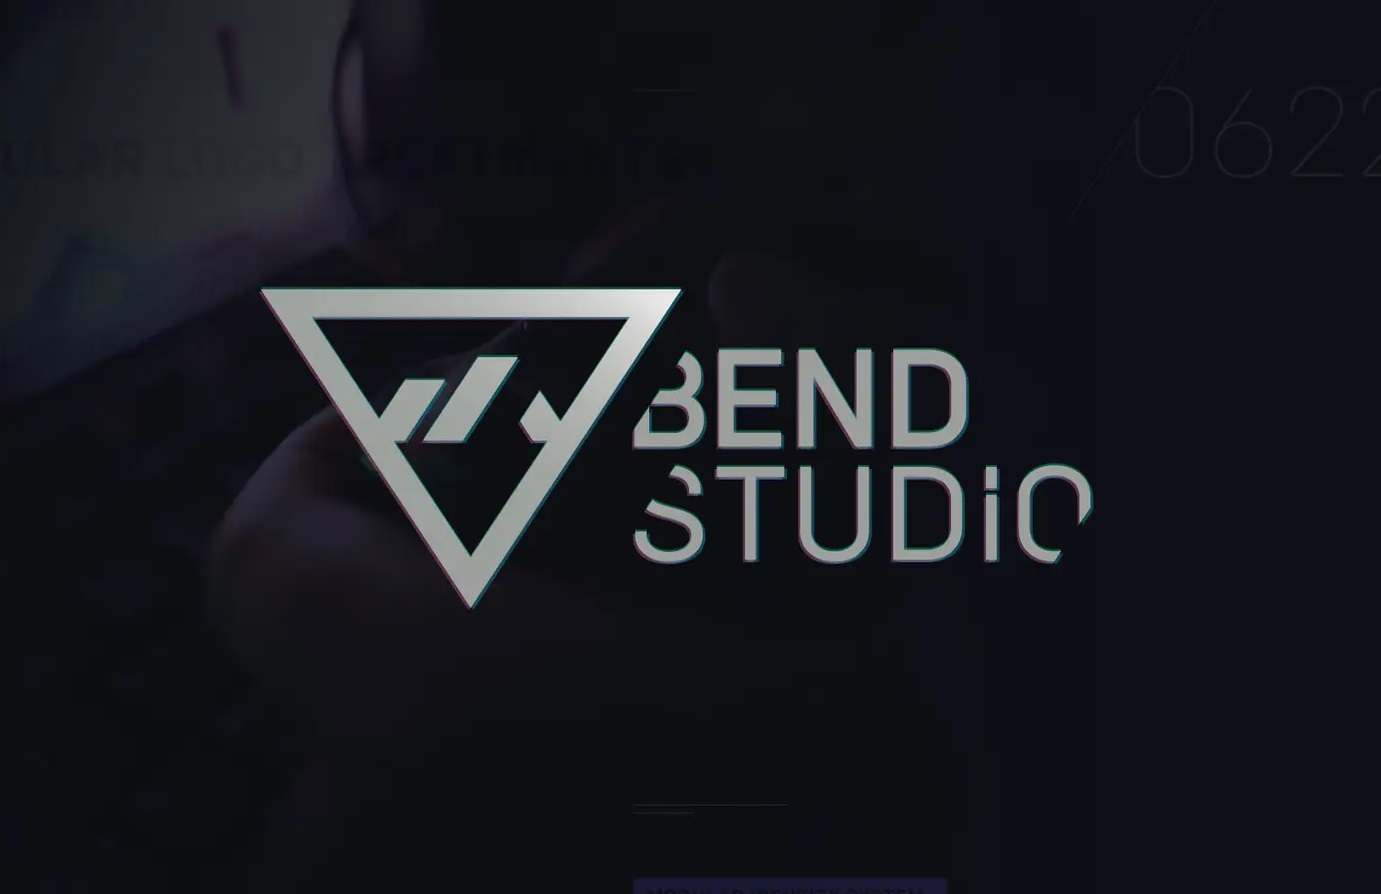 bend studio new project days gone sony logo